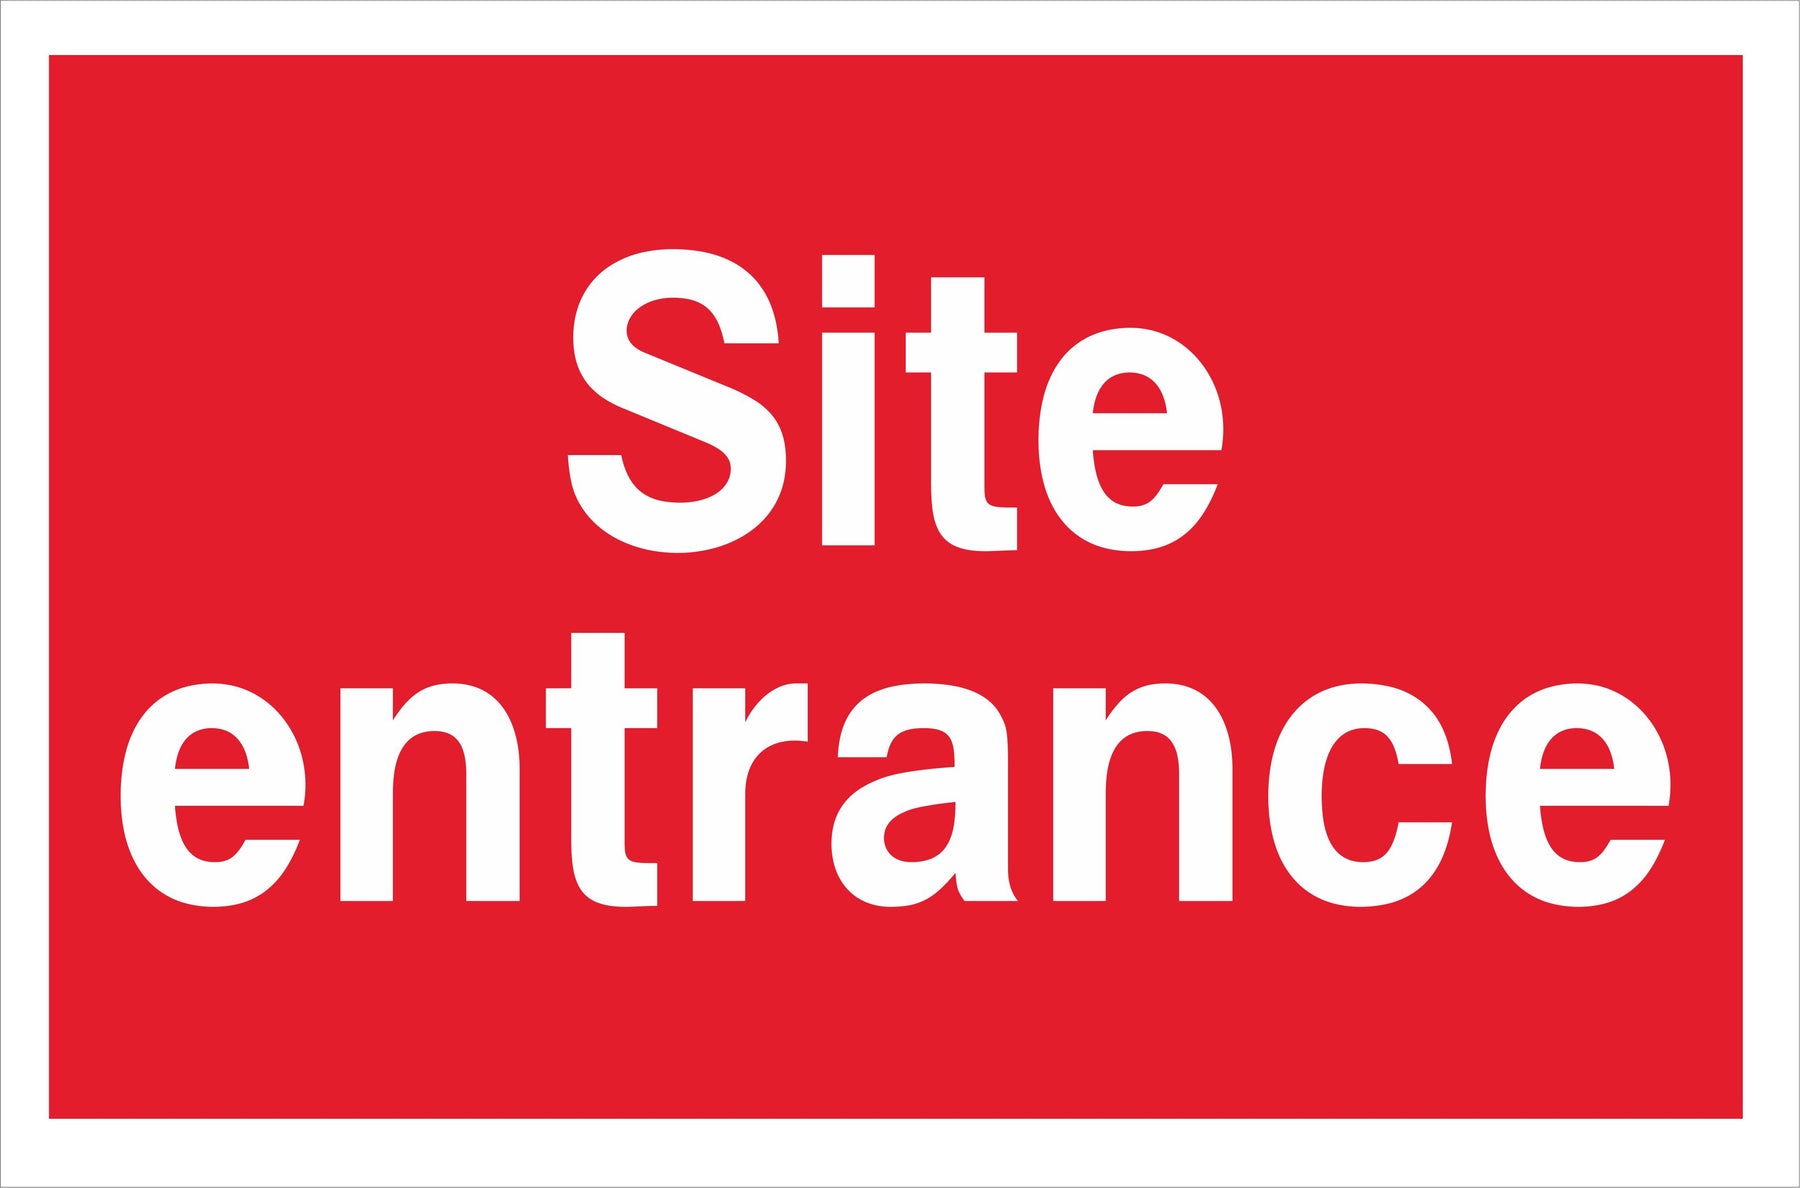 Site entrance